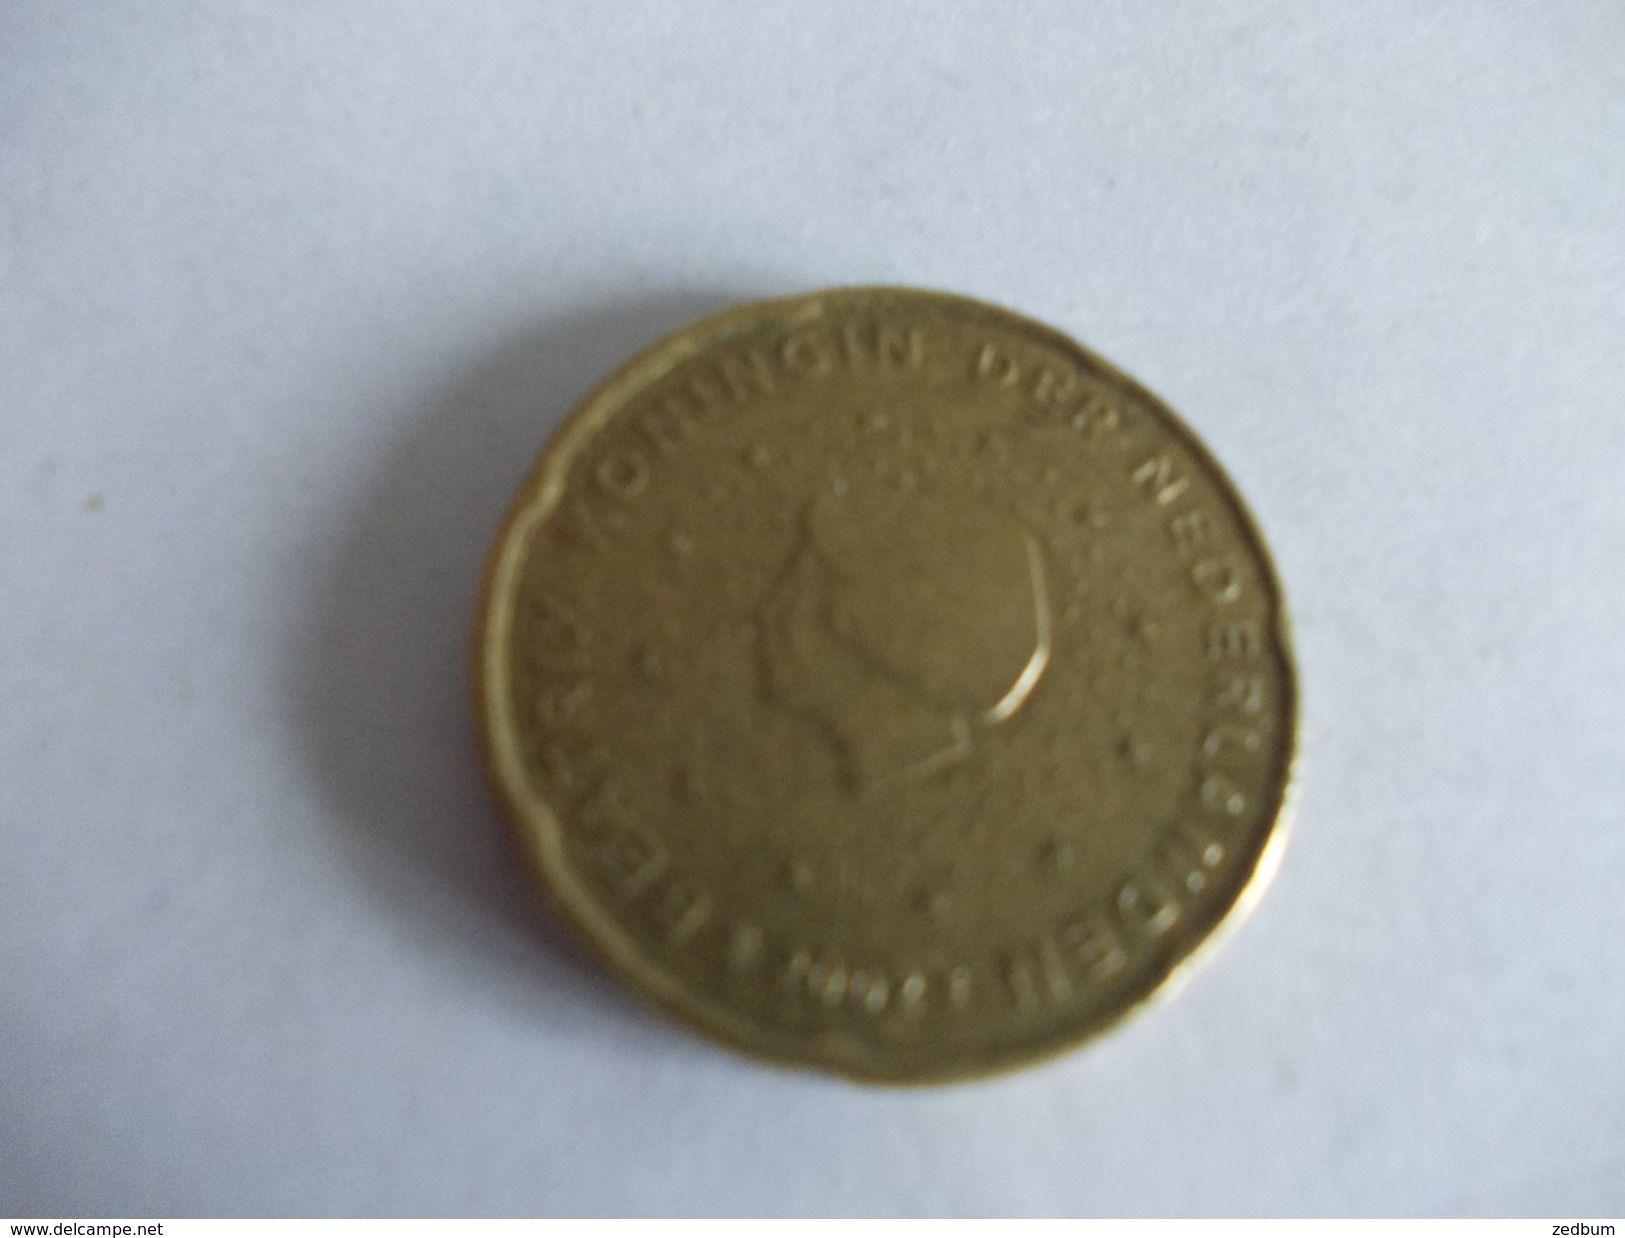 Monnaie Pièce De 20 Centimes D' Euro De Pays Bas Année 2002 Valeur Argus 1 &euro; - Netherlands